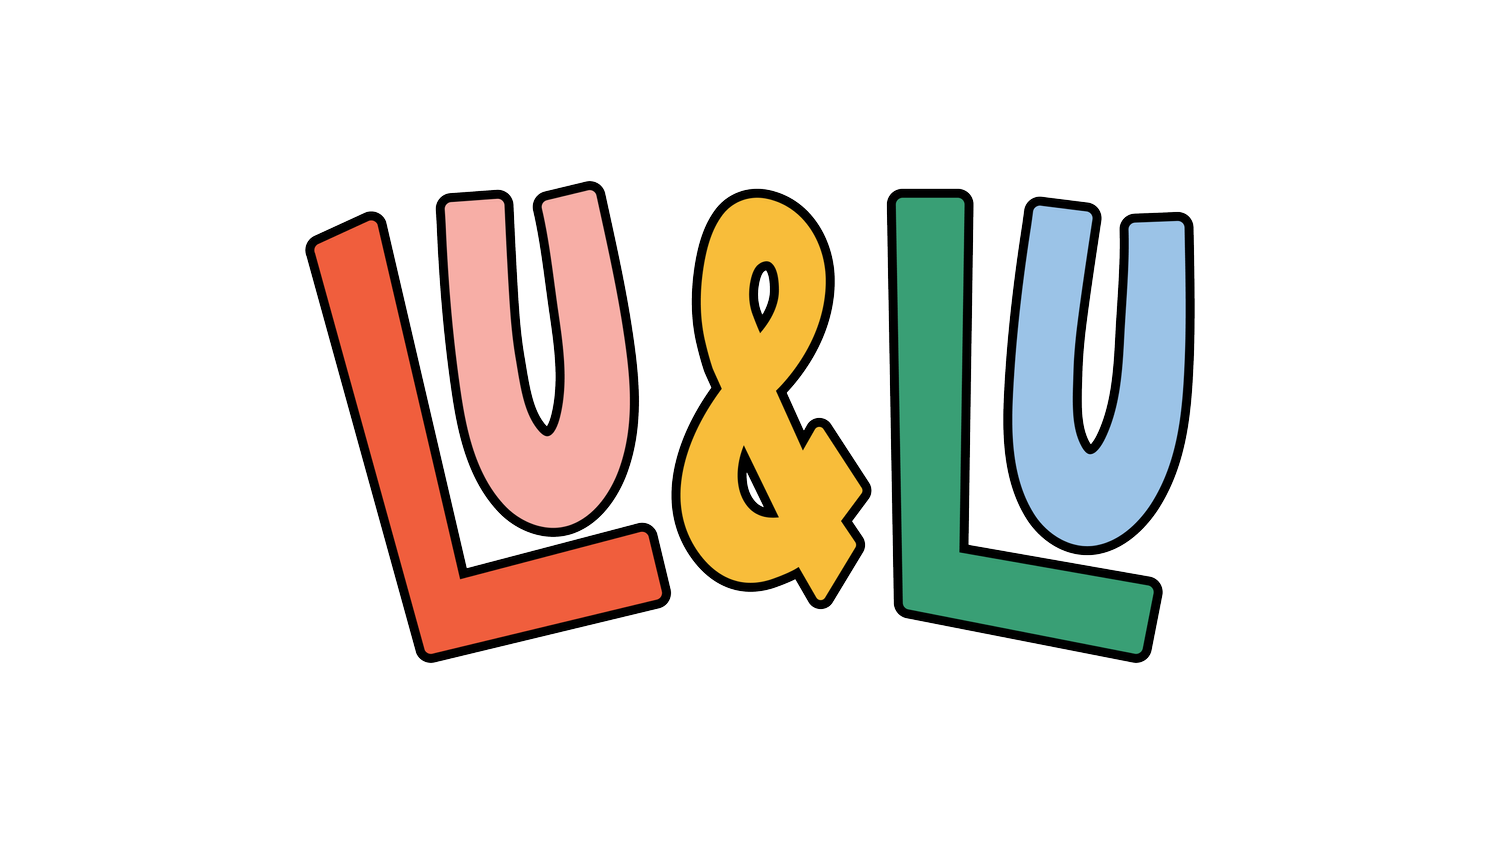 Lu and Lu